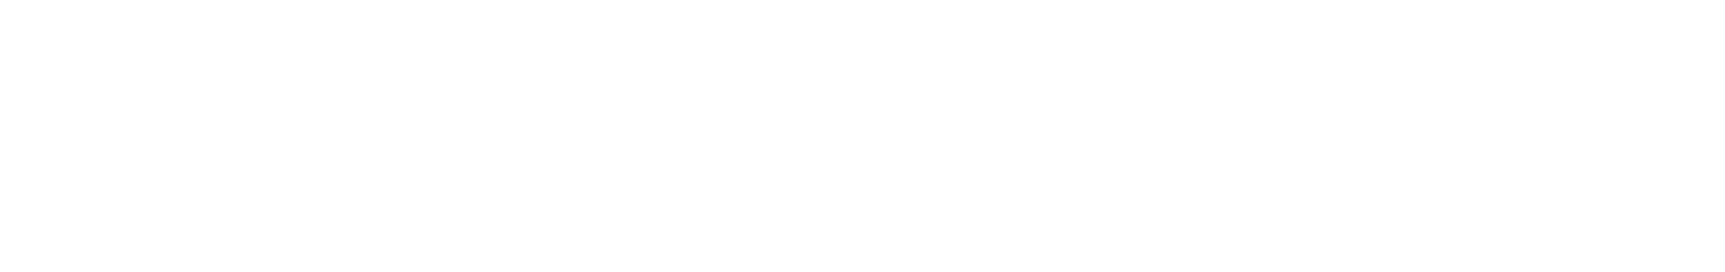 Vonovia logo grand pour les fonds sombres (PNG transparent)